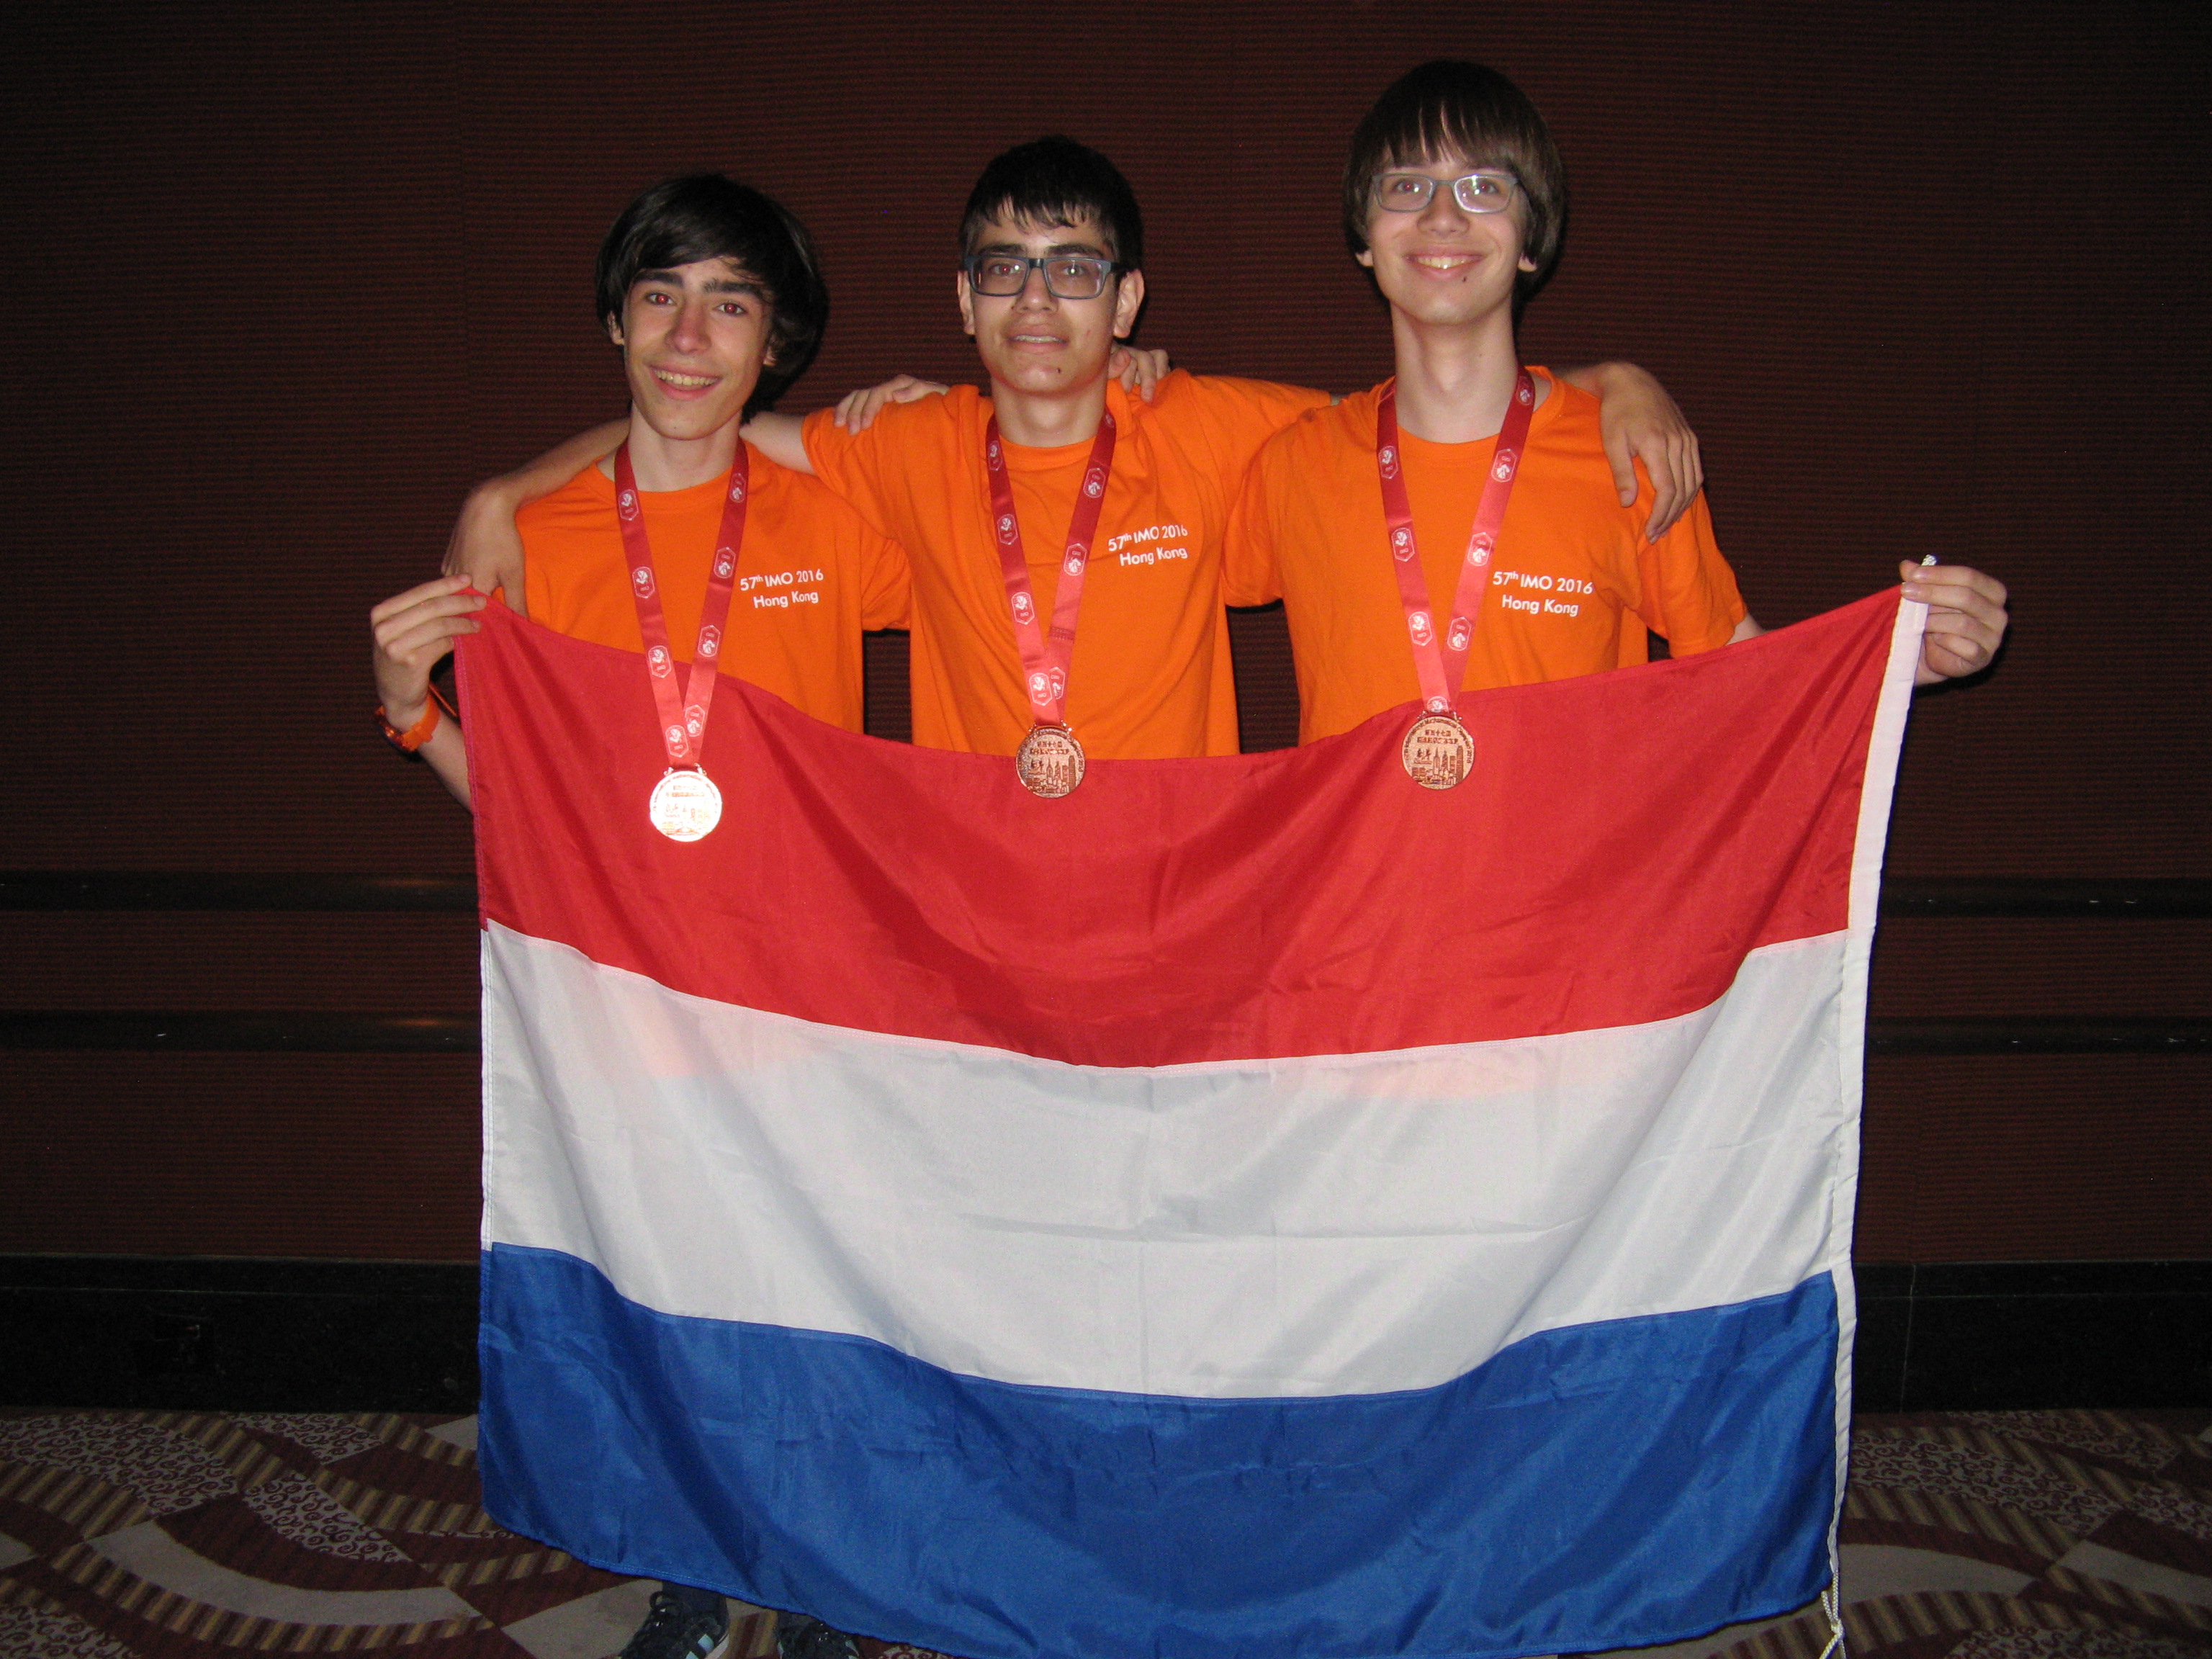 De Nederlandse medaillewinnaars: v.l.n.r. Levi, Gabriel en Pim.